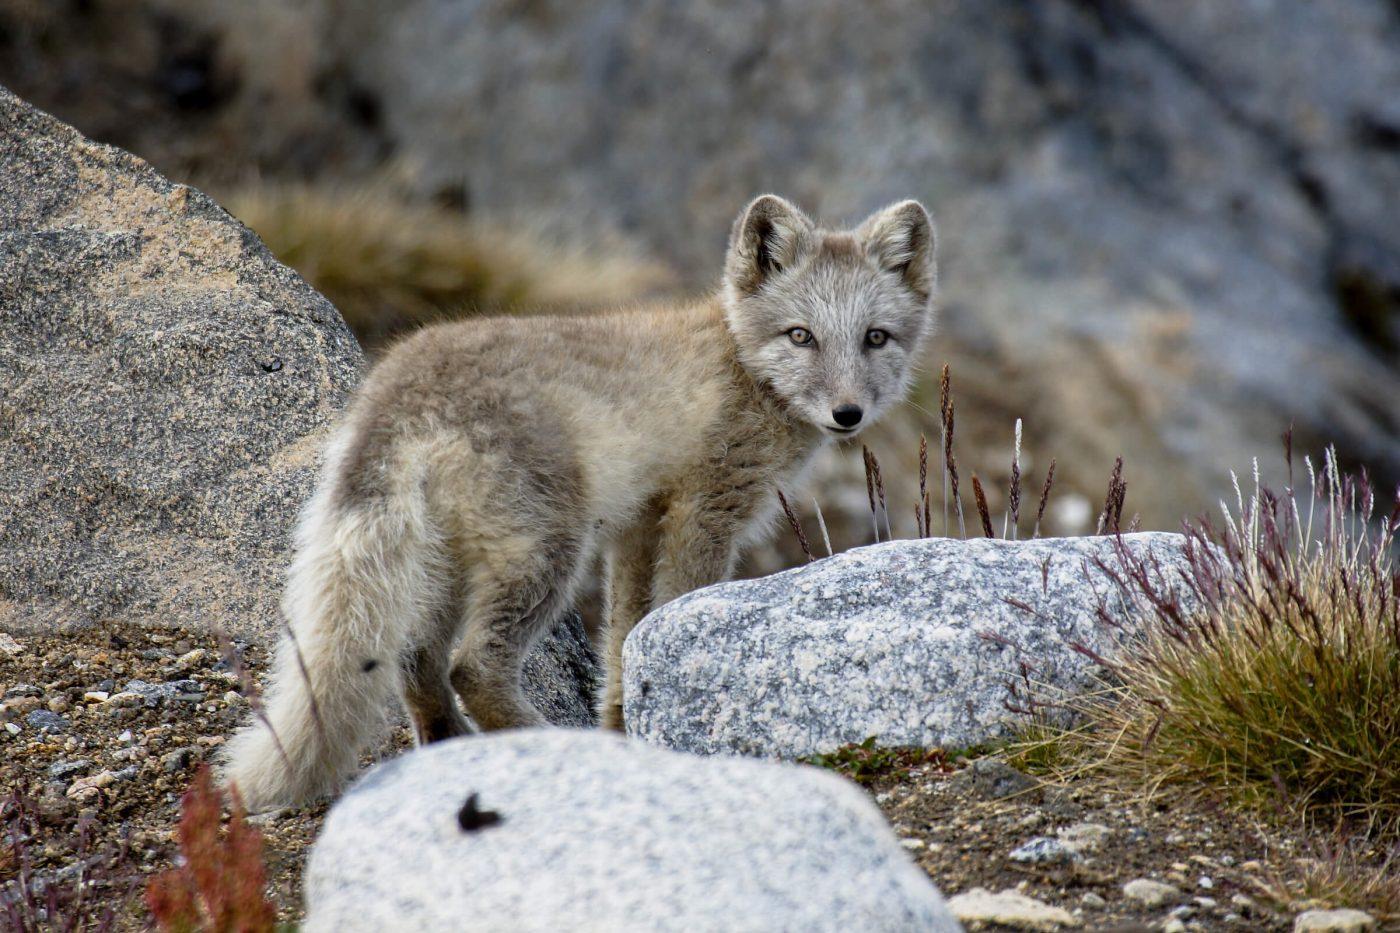 Wildlife in Greenland: Land mammals - Visit Greenland